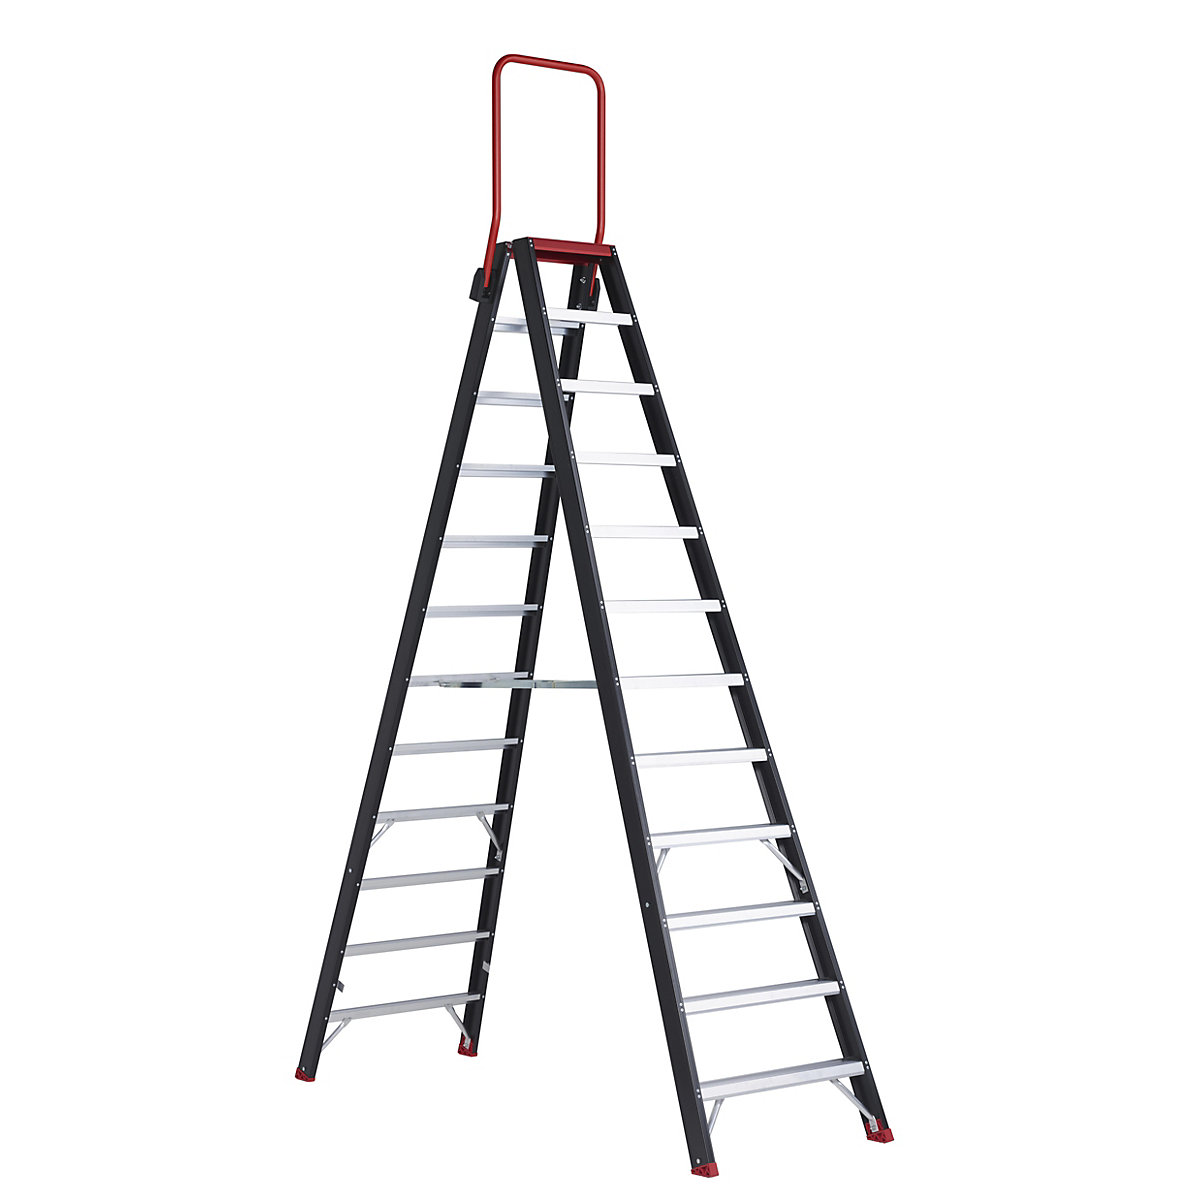 Escada dupla de segurança – Altrex, subida dos dois lados, 2 x 12 degraus-11